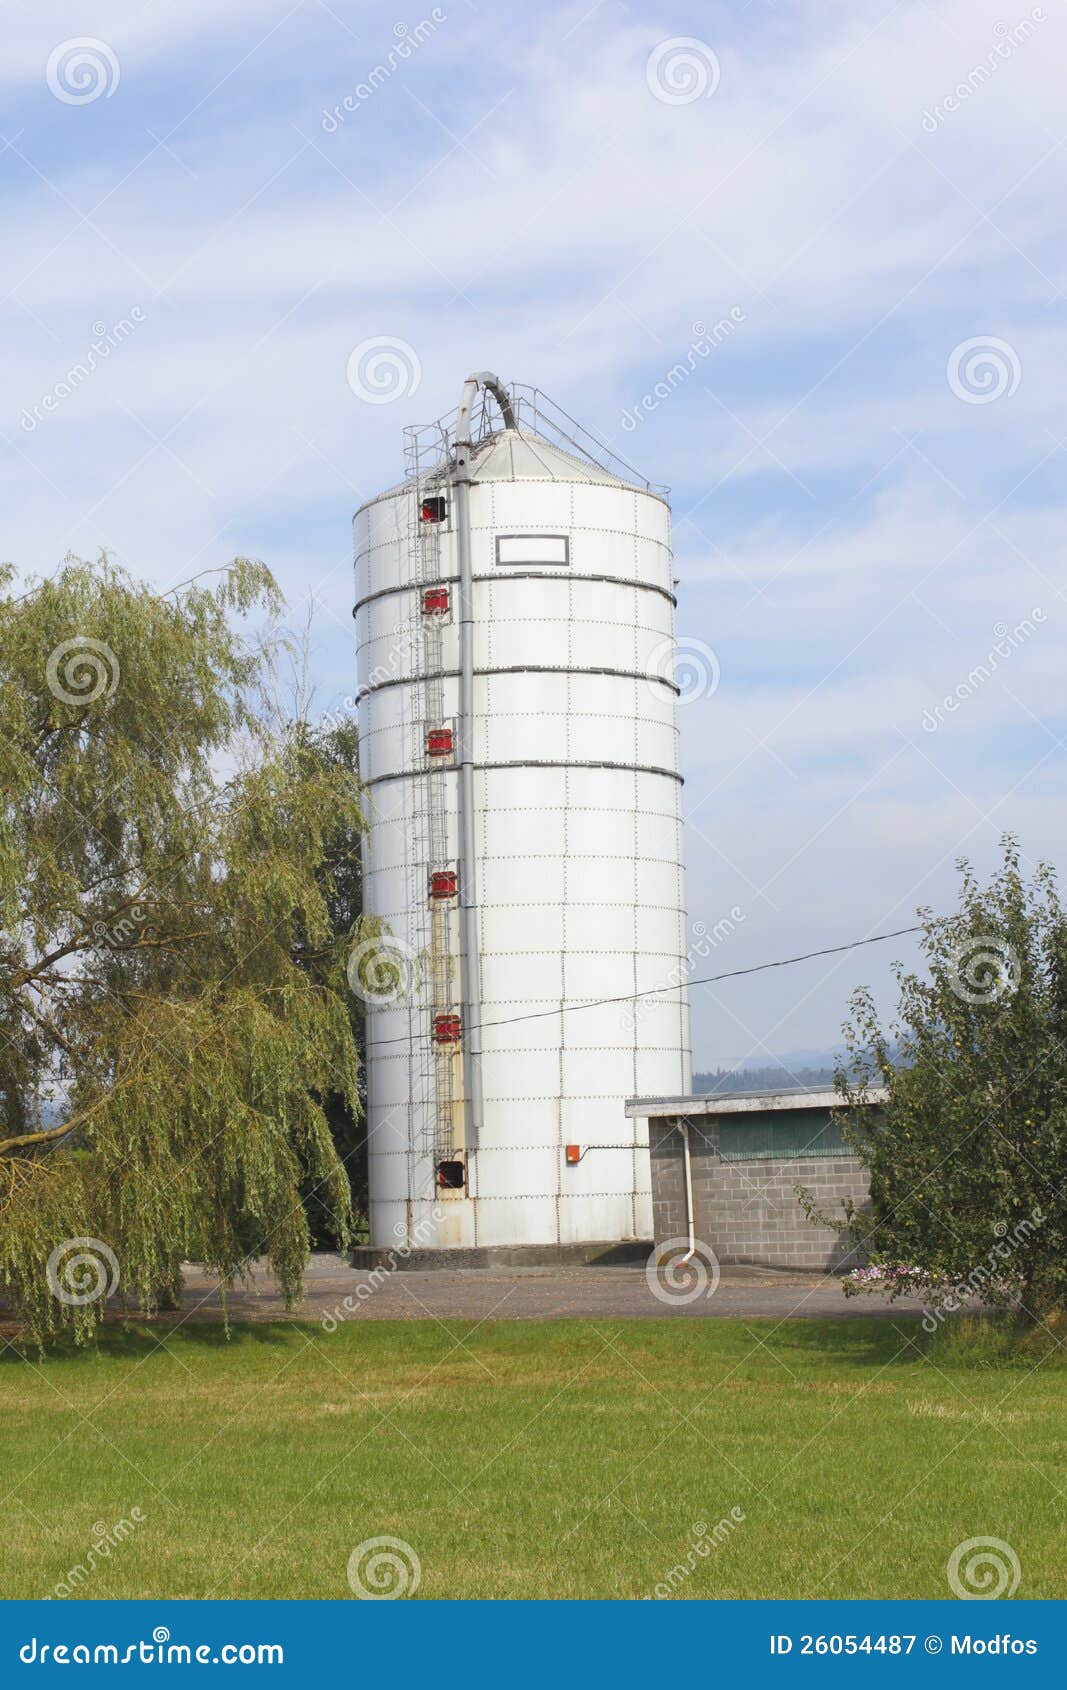 Silo dell'alimentazione sull'azienda agricola. Un silo su un'azienda agricola usata per la memorizzazione dell'alimentazione di inverno.